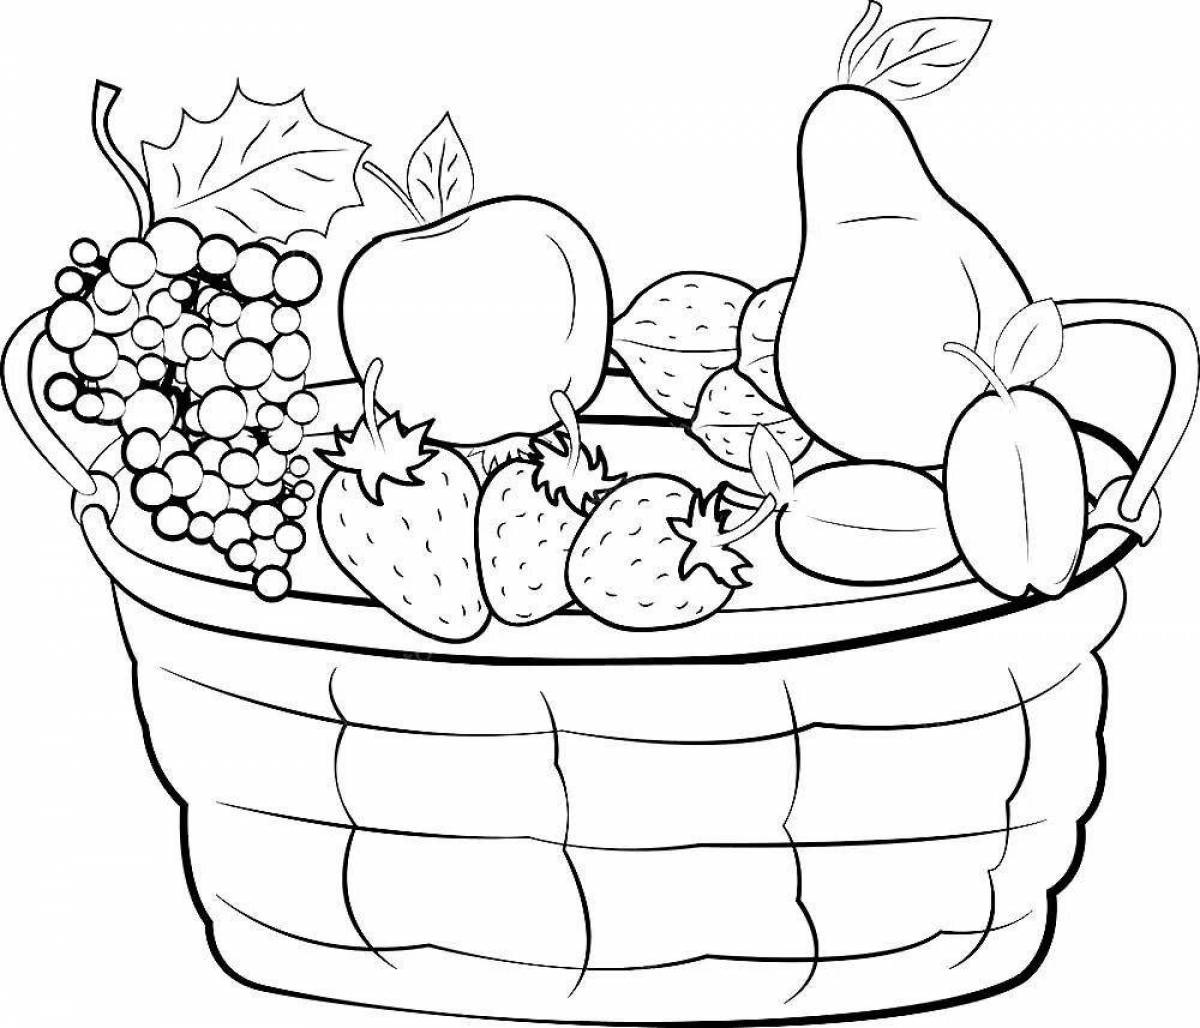 Crazy fruit basket coloring book for kids